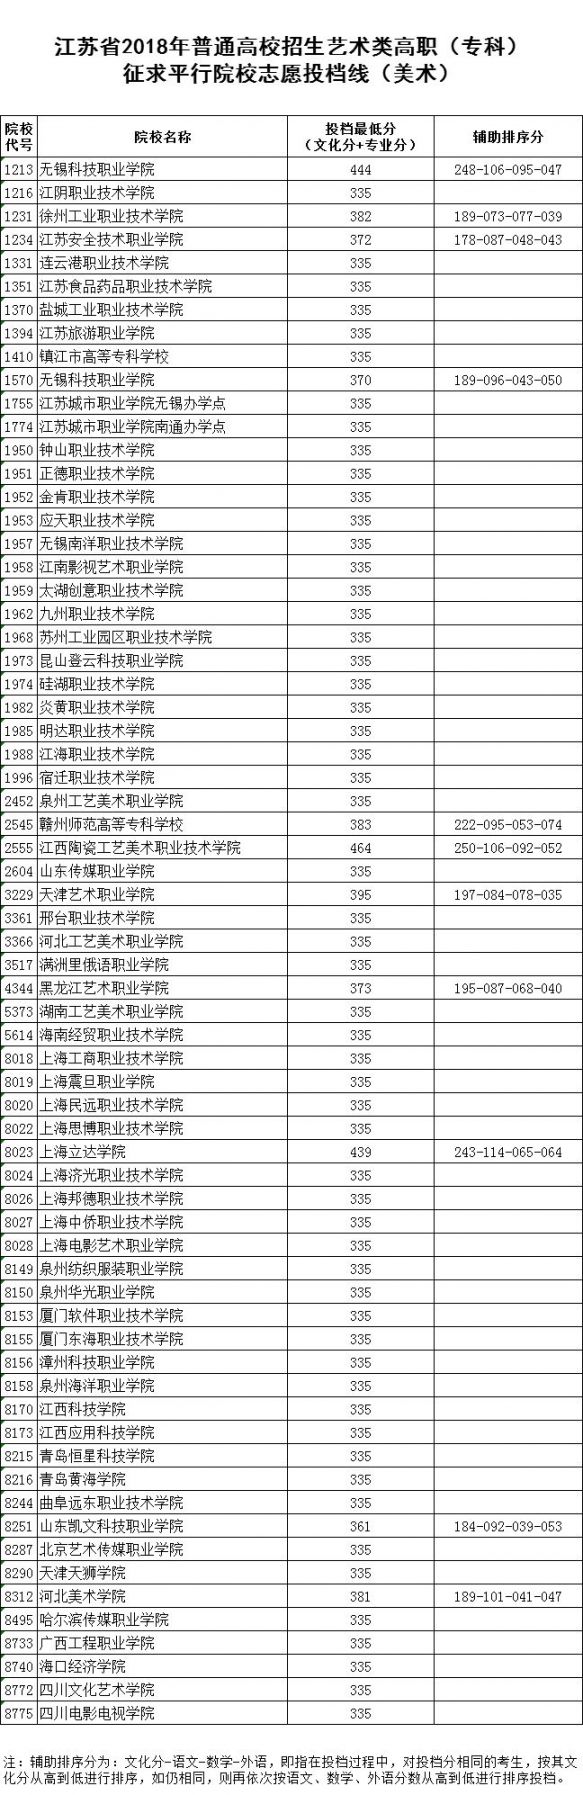 2018江苏高考体育类、艺术类高职（专科） 征求平行院校志愿投档线